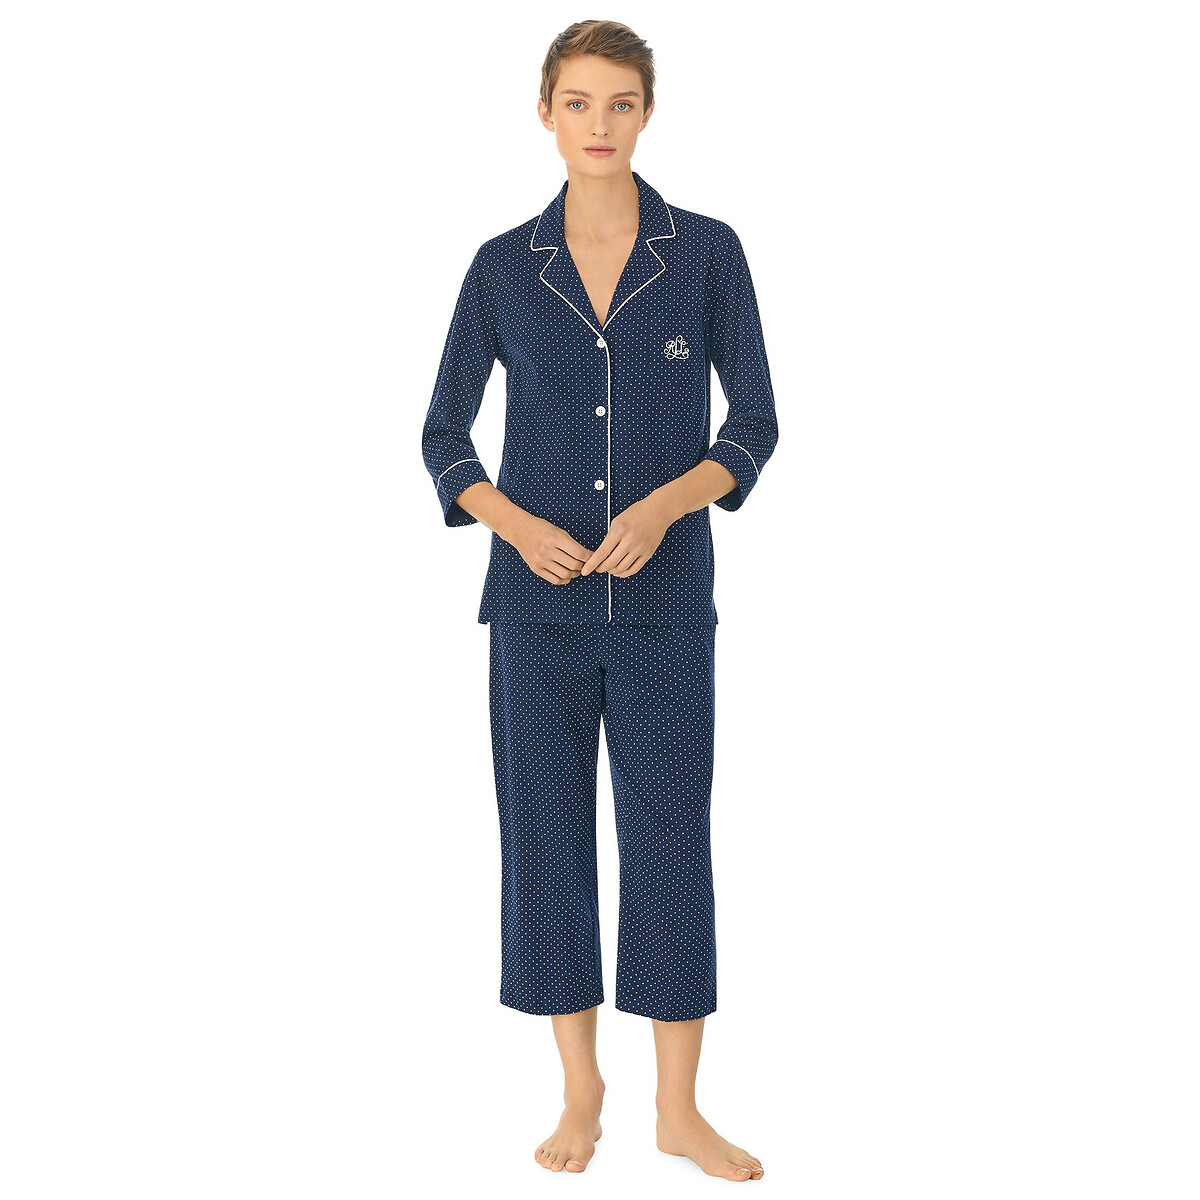 Polka Dot Cotton Pyjamas with 3/4 Length Sleeves